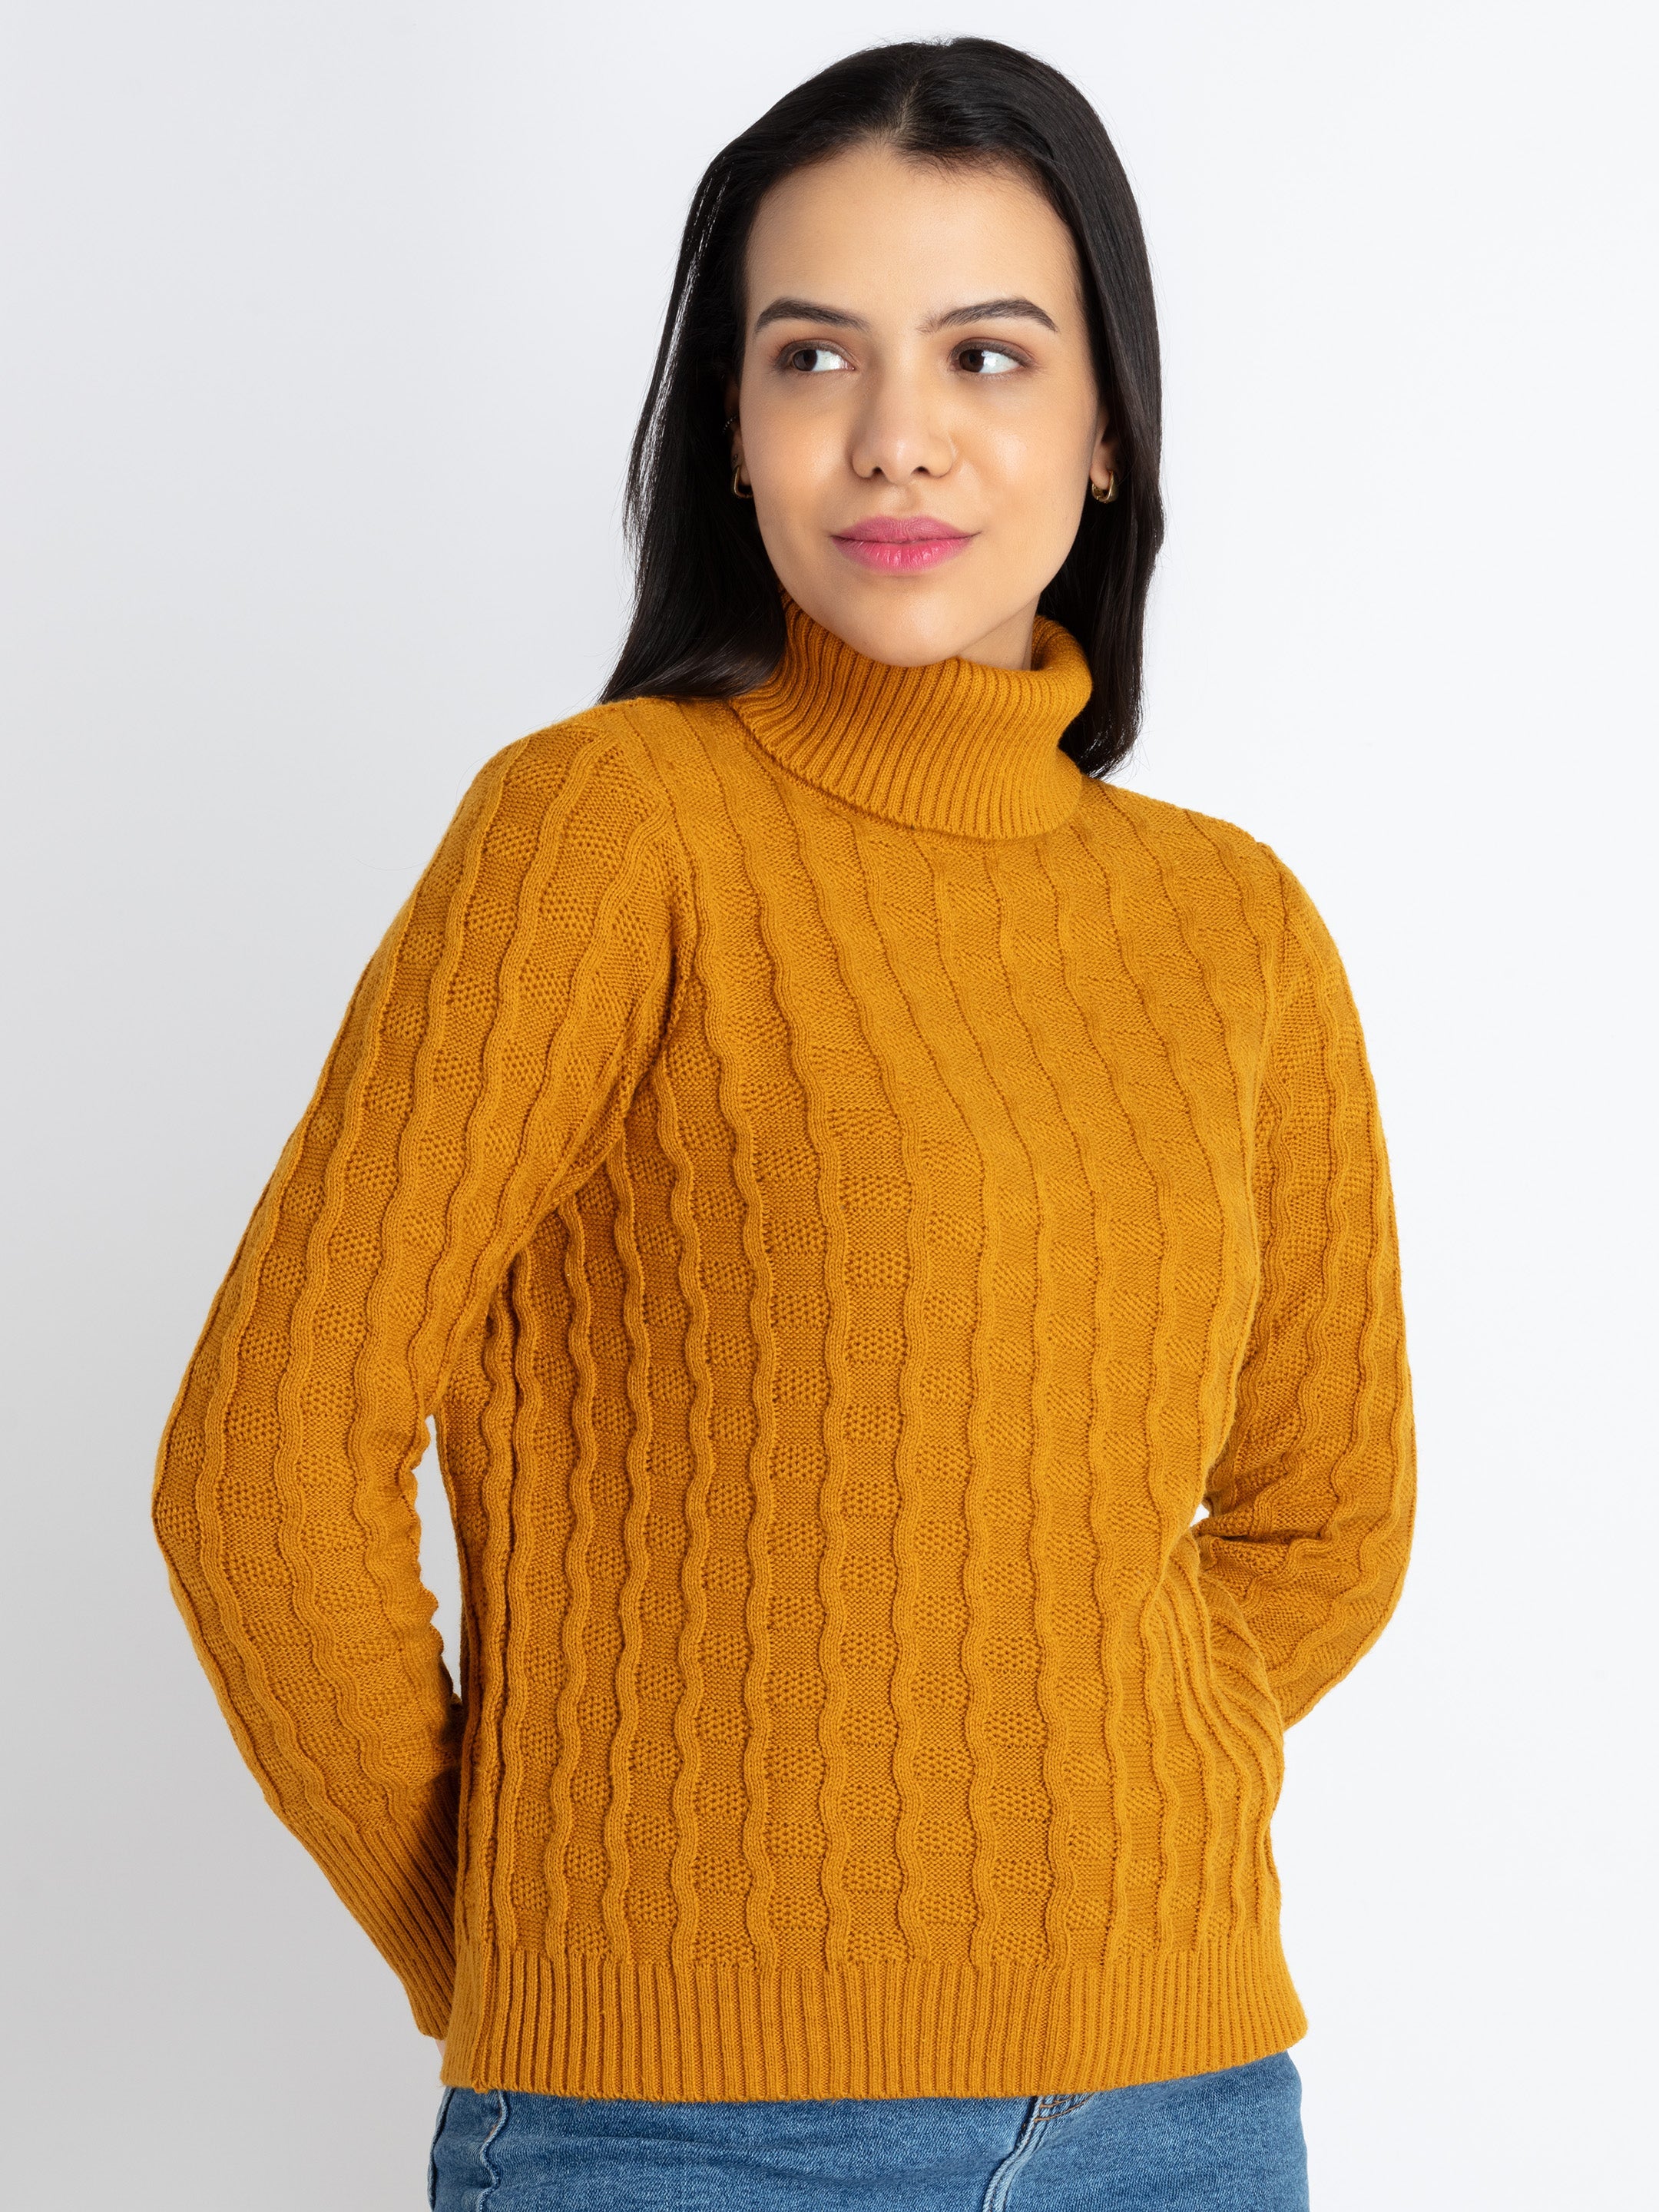 winter sweaters for women